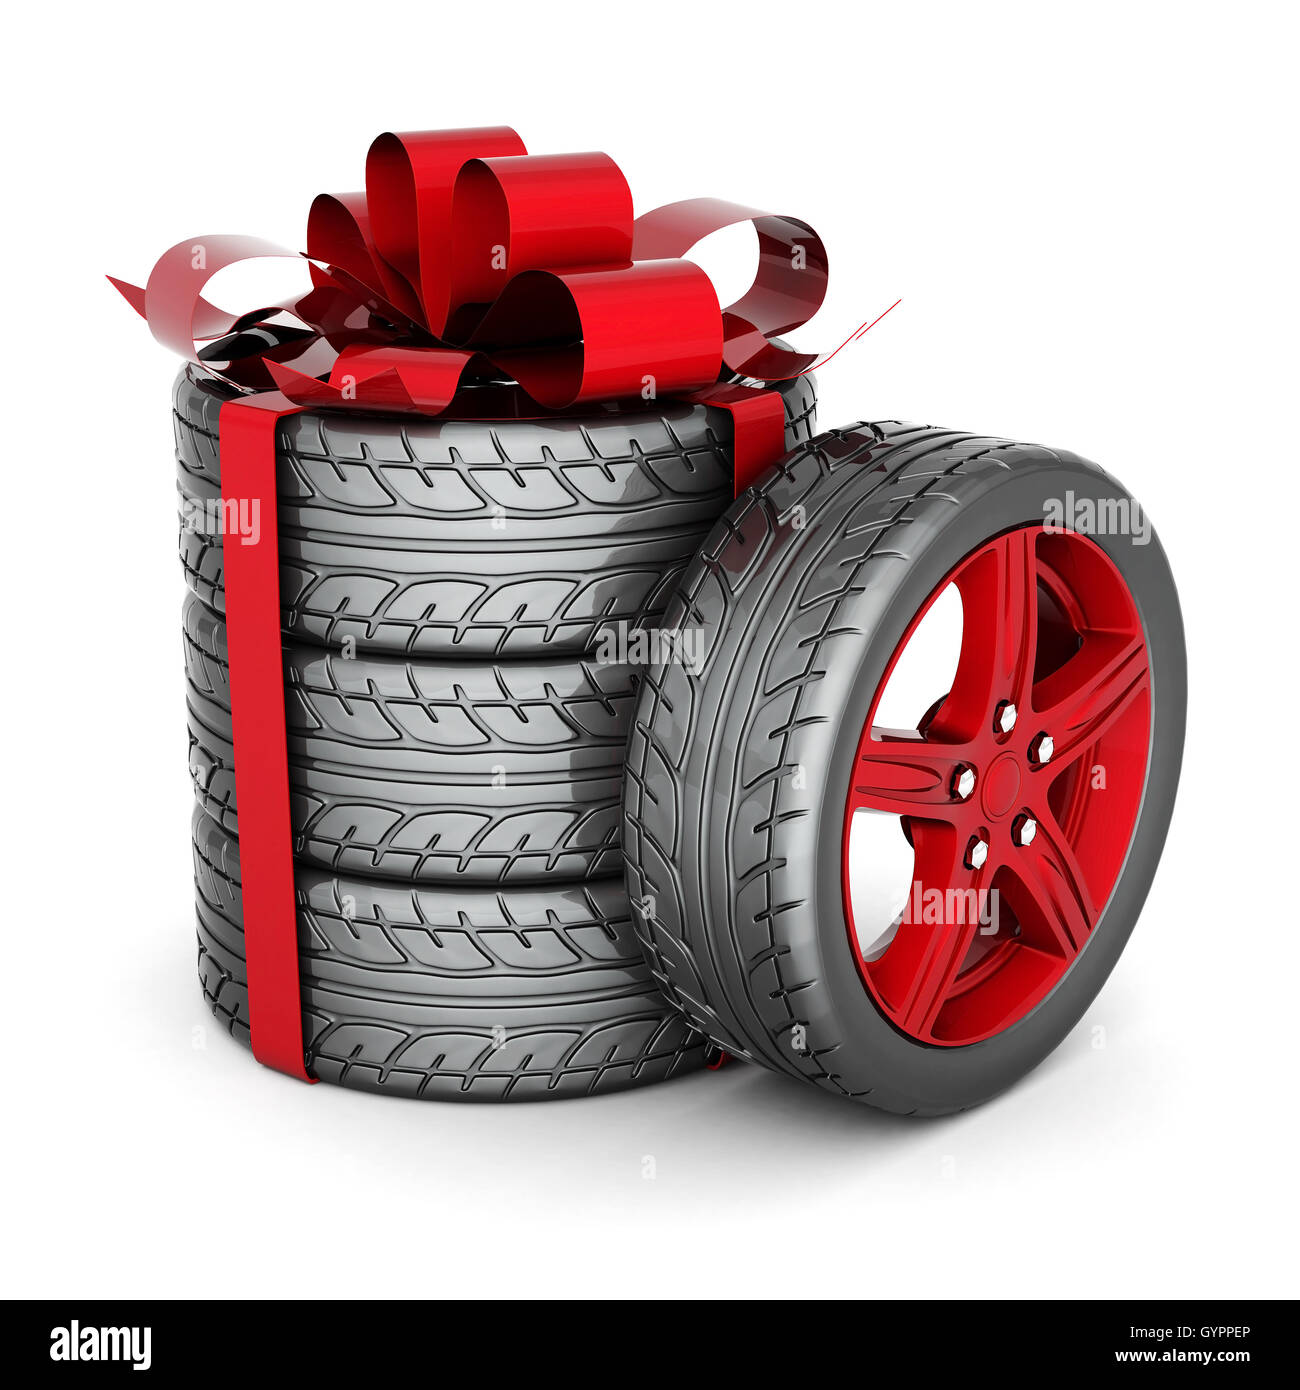 Везем колеса интернет магазин шины и диски. Зимняя резина в подарок. Автомобильное колесо. Покрышки для авто. Колеса в подарок.